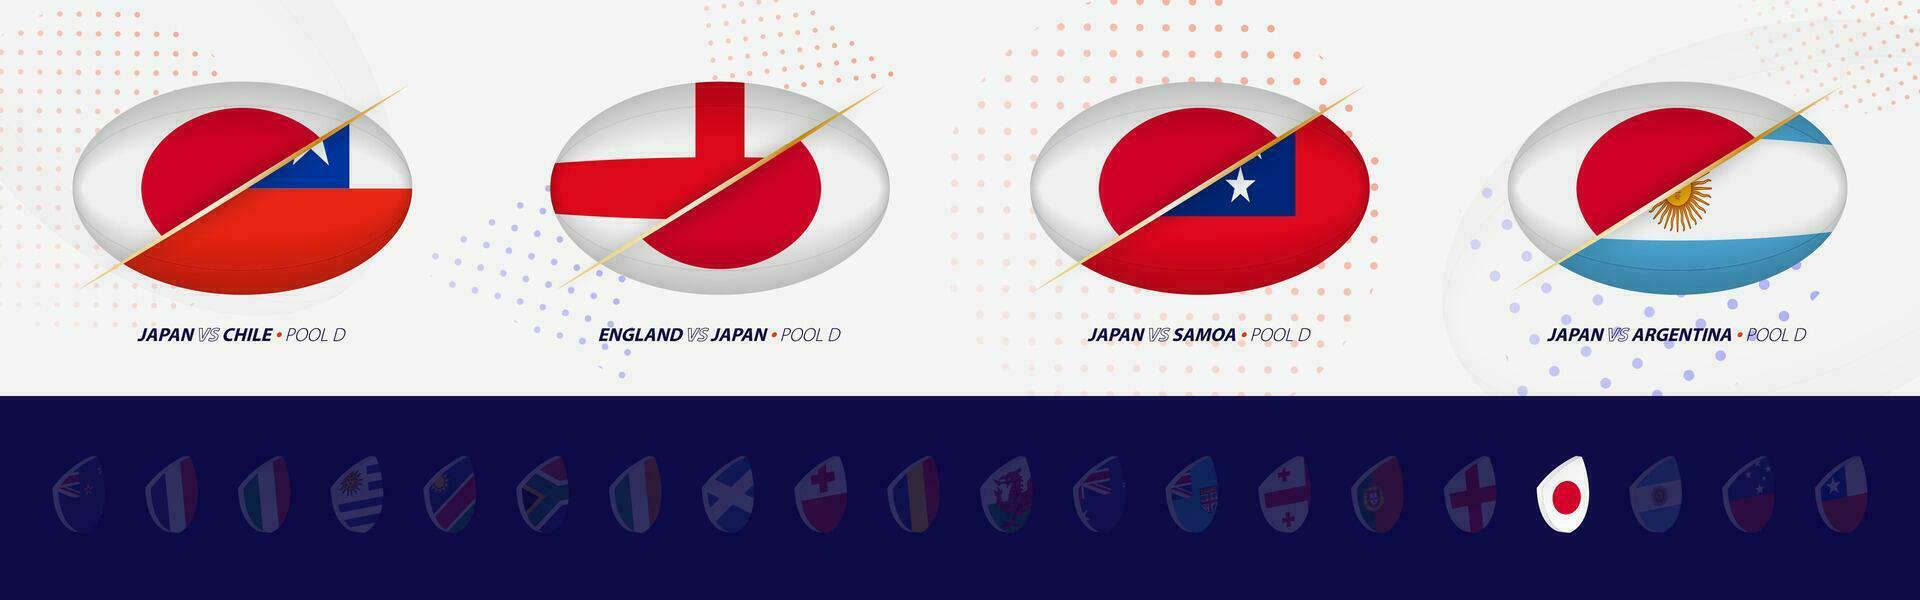 rugby konkurrens ikoner av japan rugby nationell team, Allt fyra tändstickor ikon i slå samman. vektor